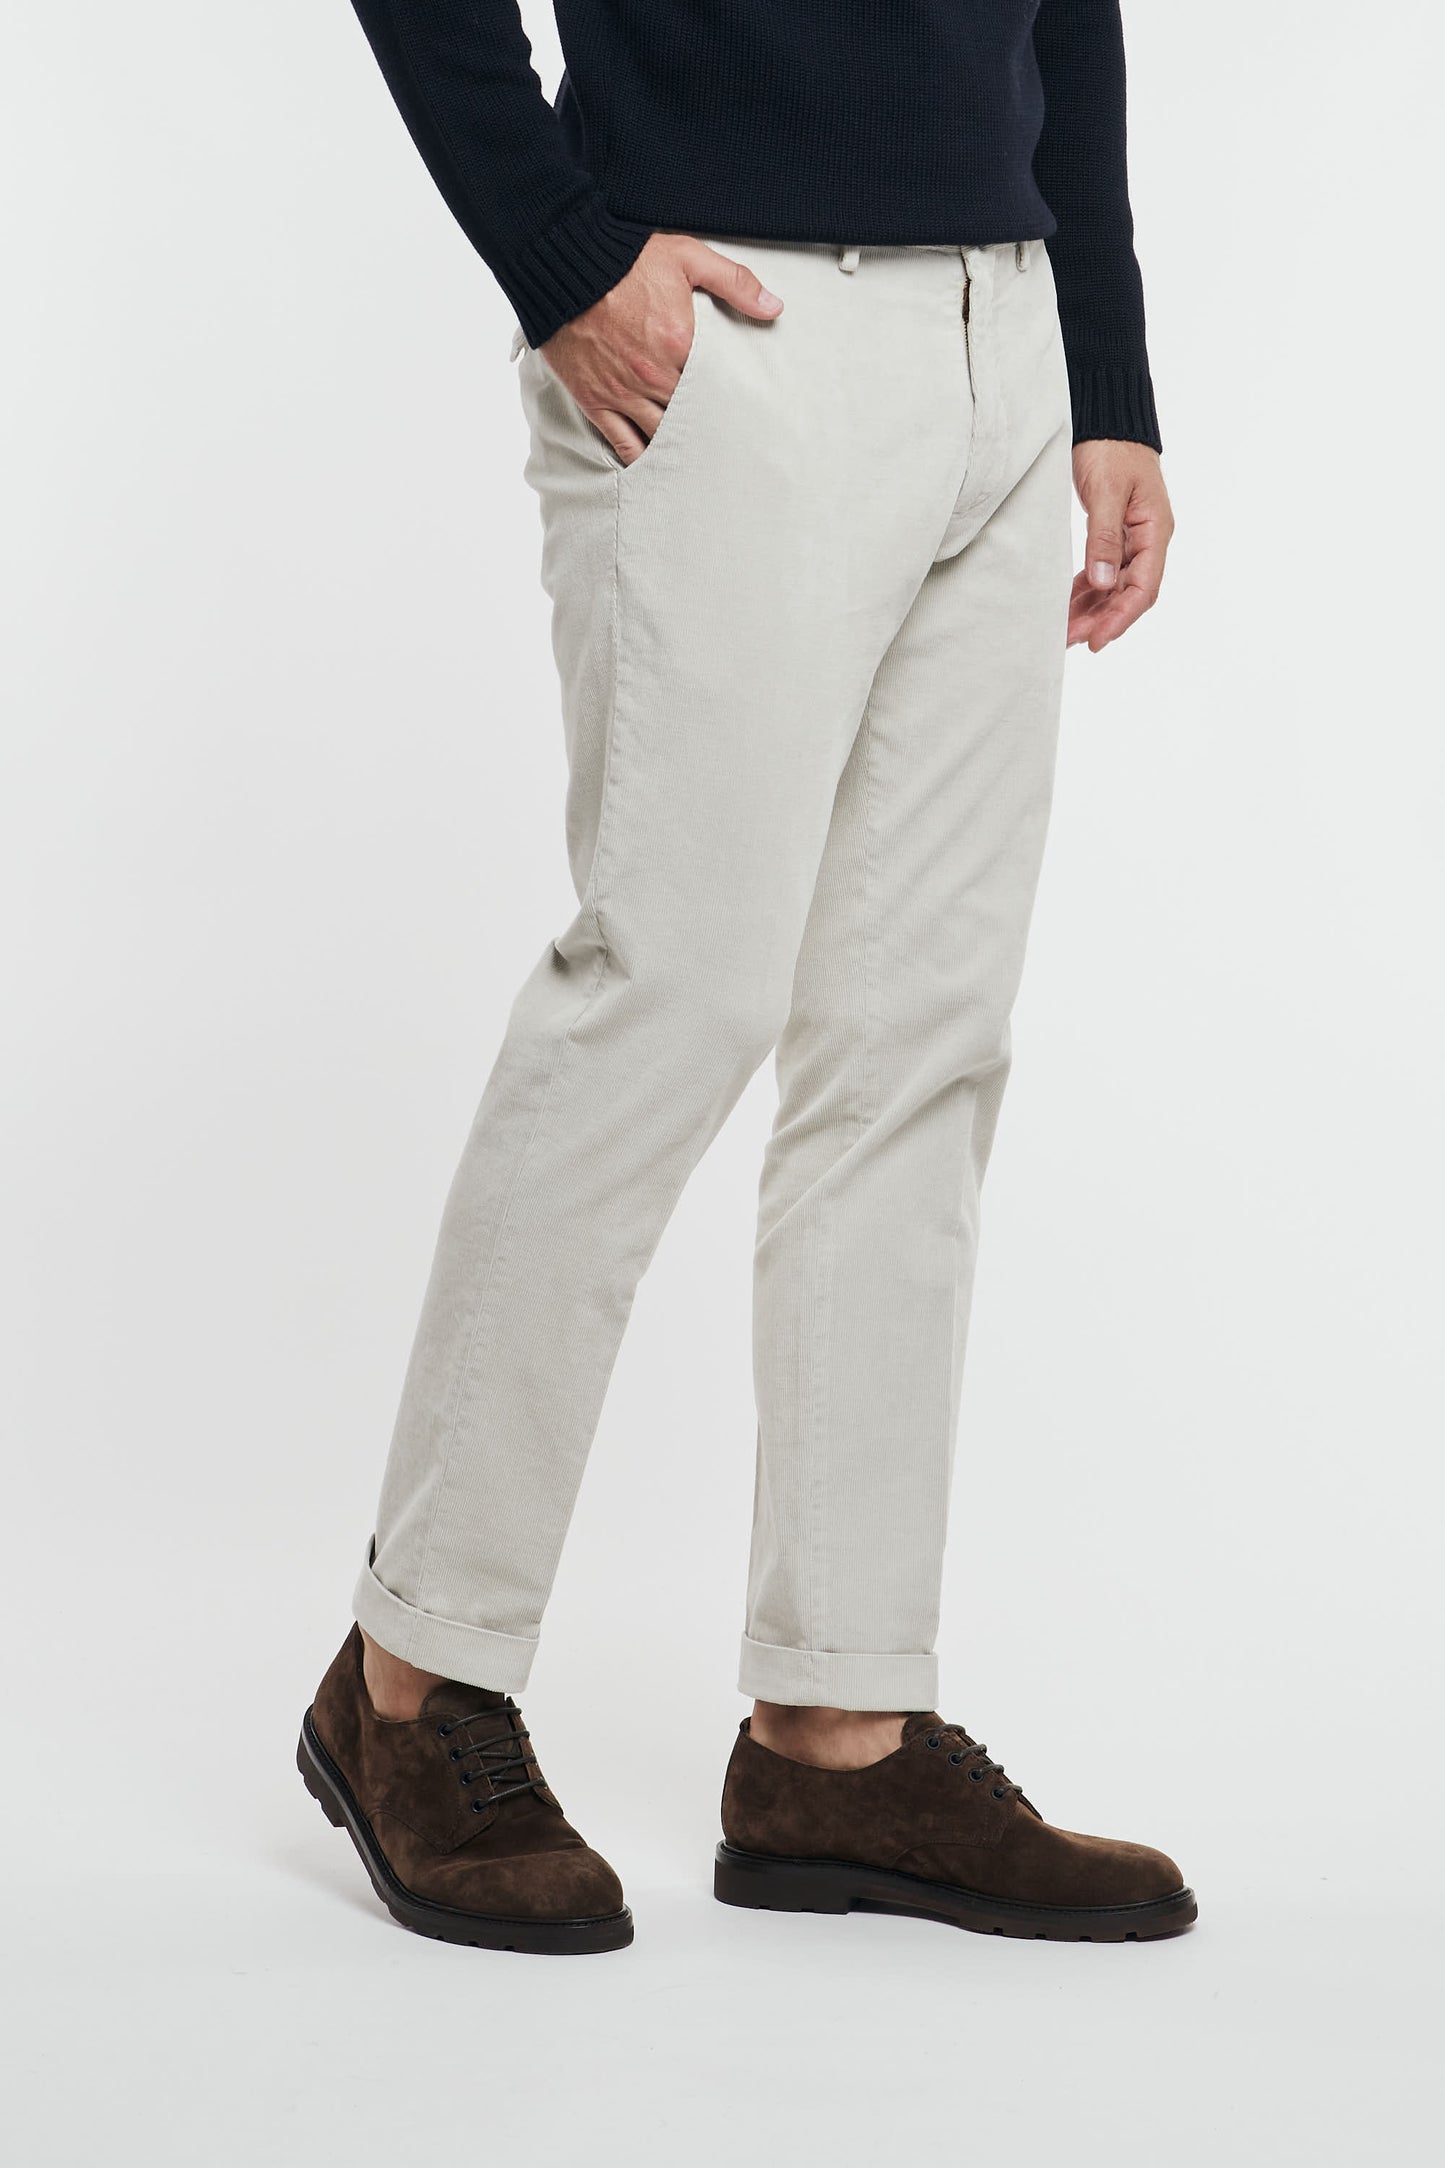  Santaniello Men's Multicolor Trousers 92854-1650 Multicolore Uomo - 2